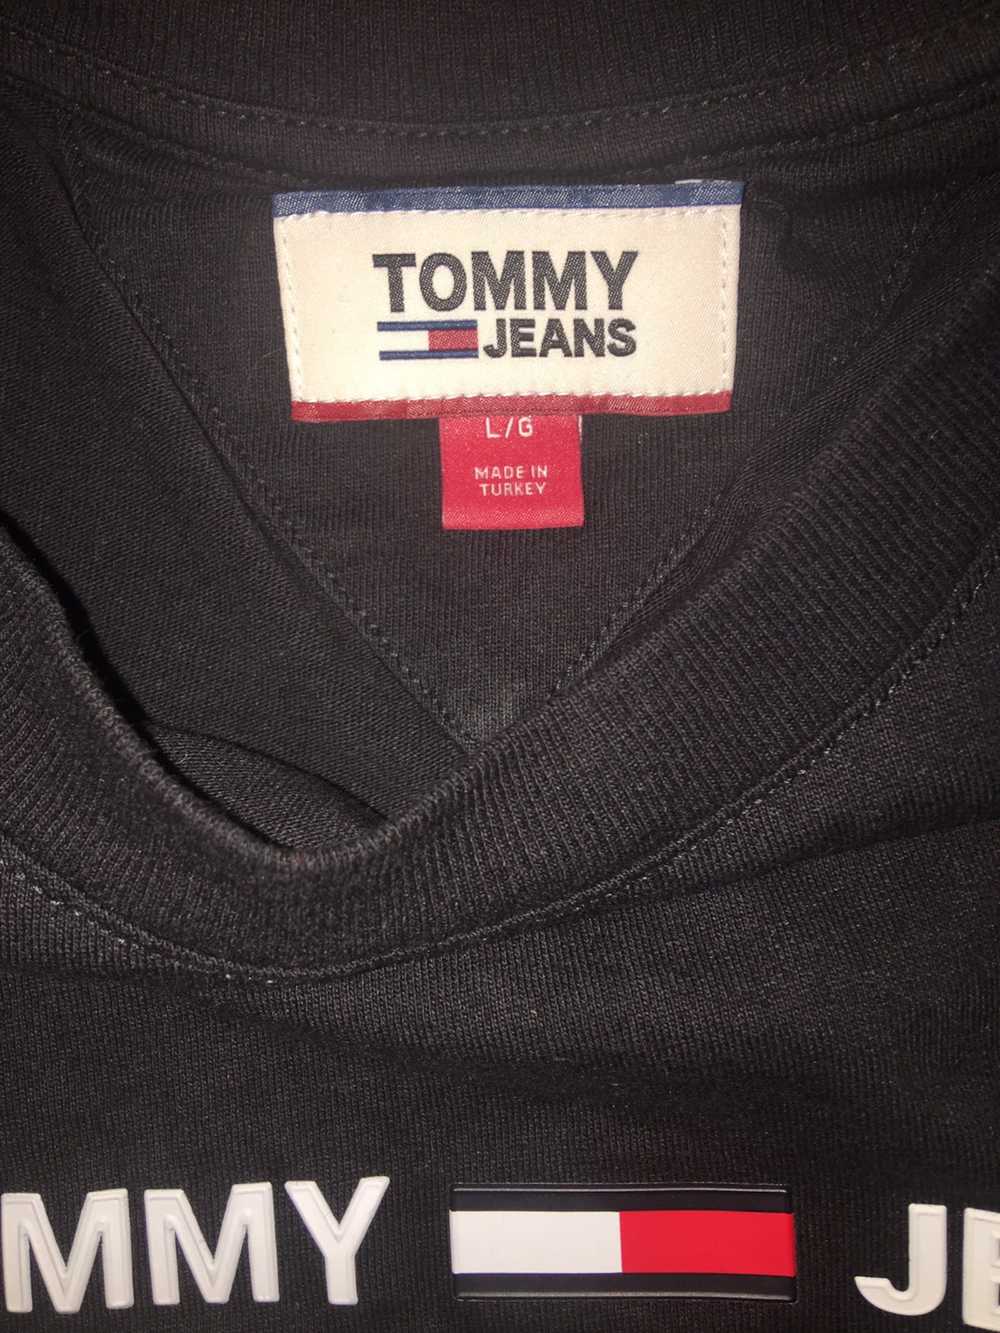 Tommy Hilfiger Tommy Hilfiger Jeans Logo Tee - image 2